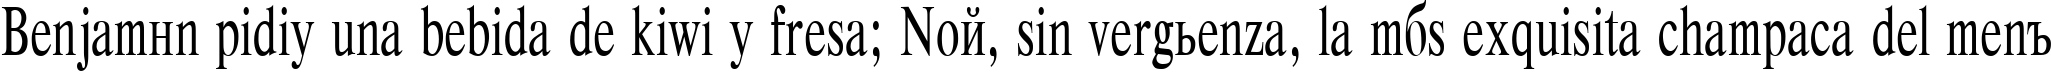 Пример написания шрифтом Respect Plain:001.00165nh текста на испанском